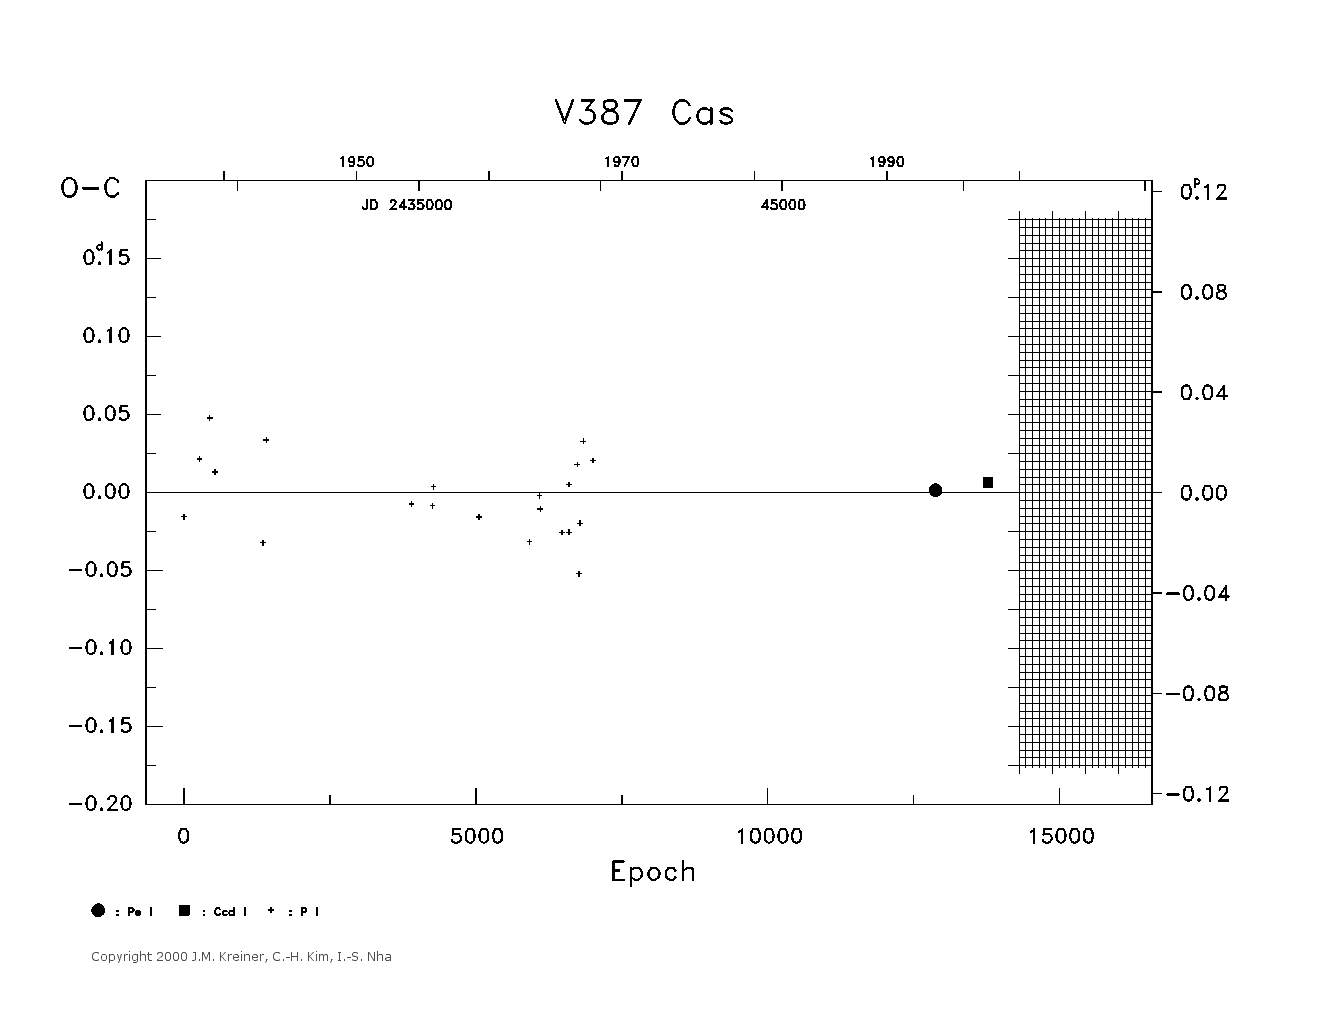 [IMAGE: large V387 CAS O-C diagram]